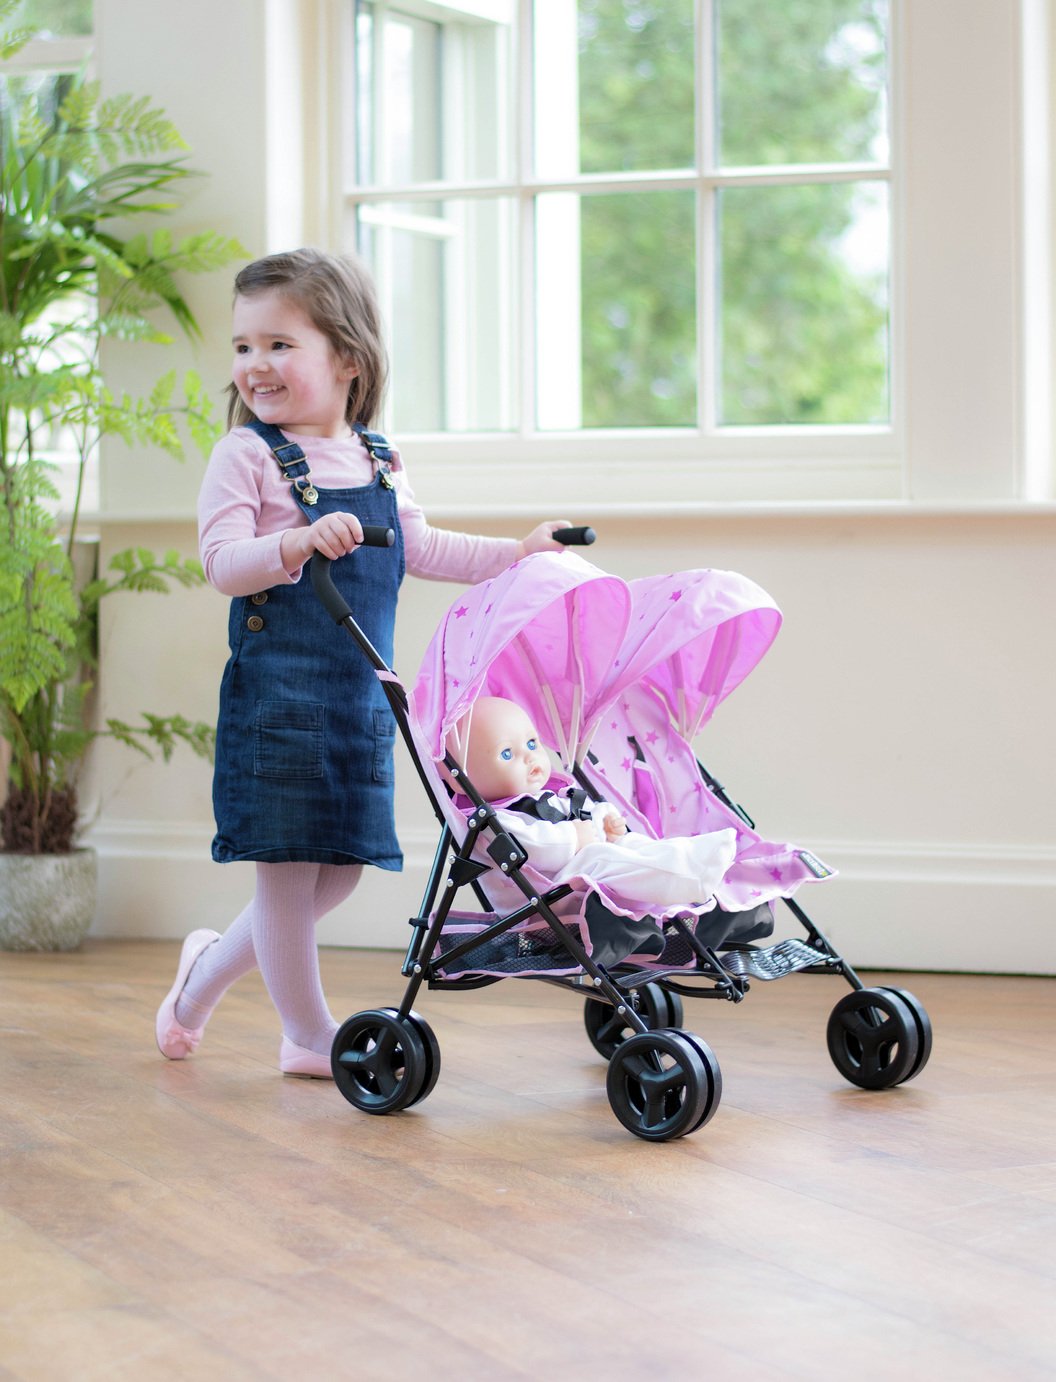 MAMAS PAPAS Junior Twin Cruise poussette favori poupées pour une promenade dans le style _ UK 